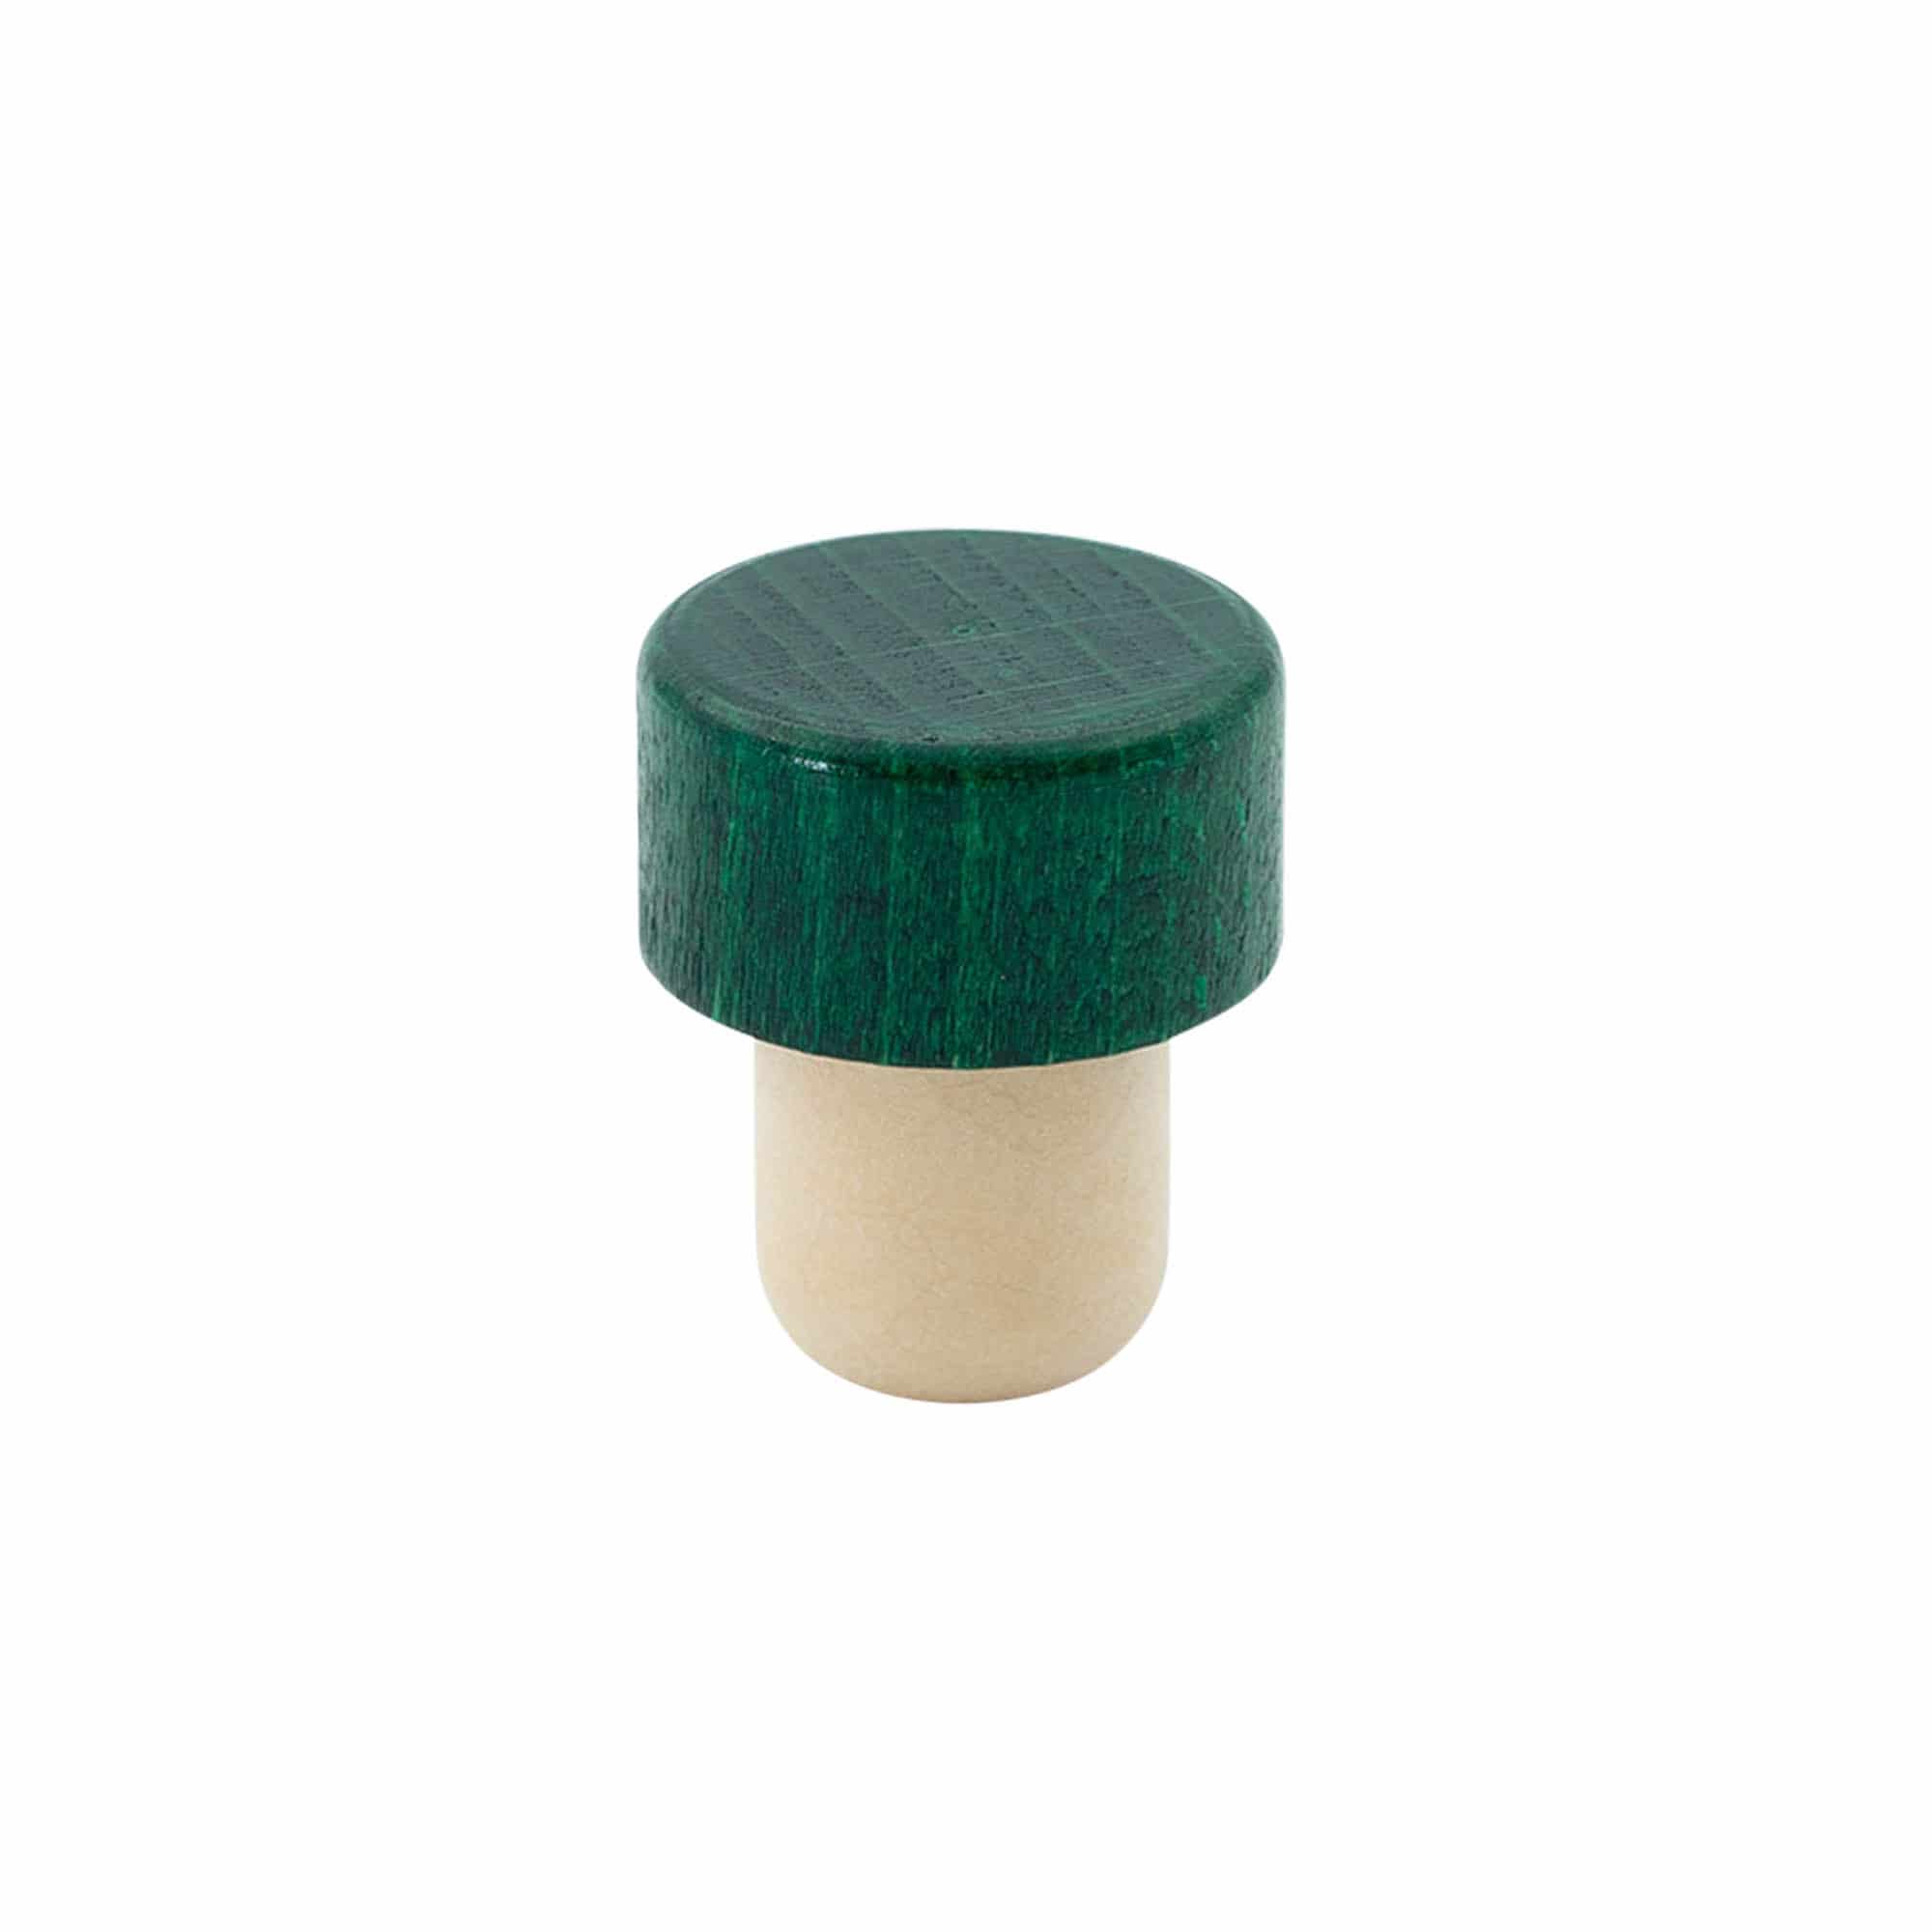 Dopkurk, 19 mm, hout, groen, voor monding: kurk